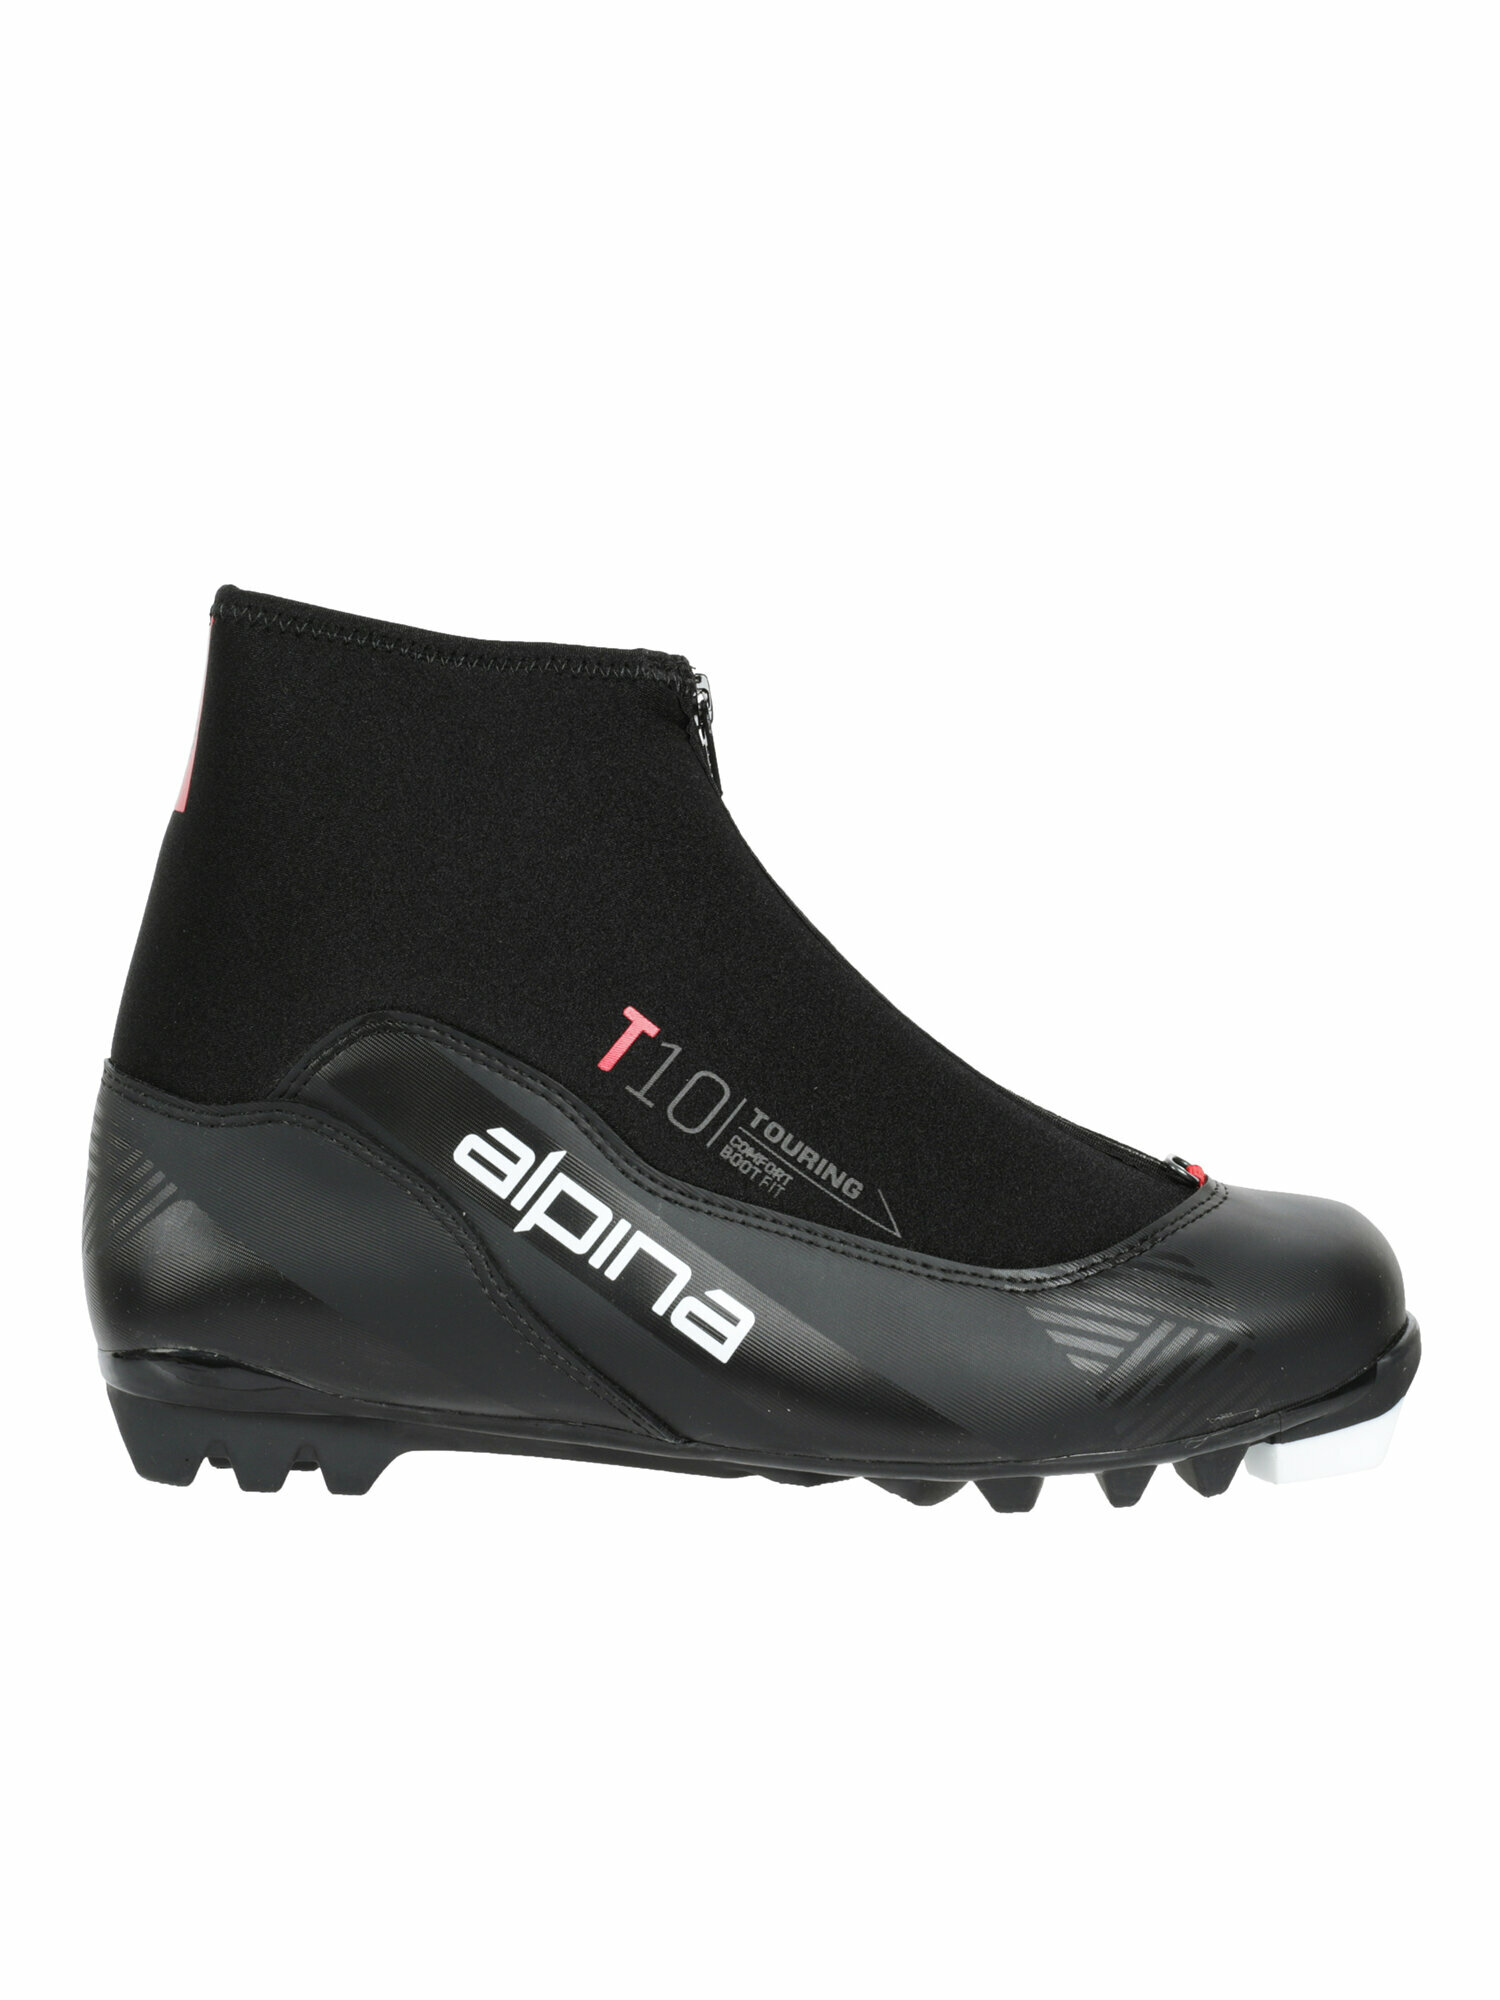 Лыжные ботинки Alpina. 2022-23 T 10 BLACK/RED (EUR:46)